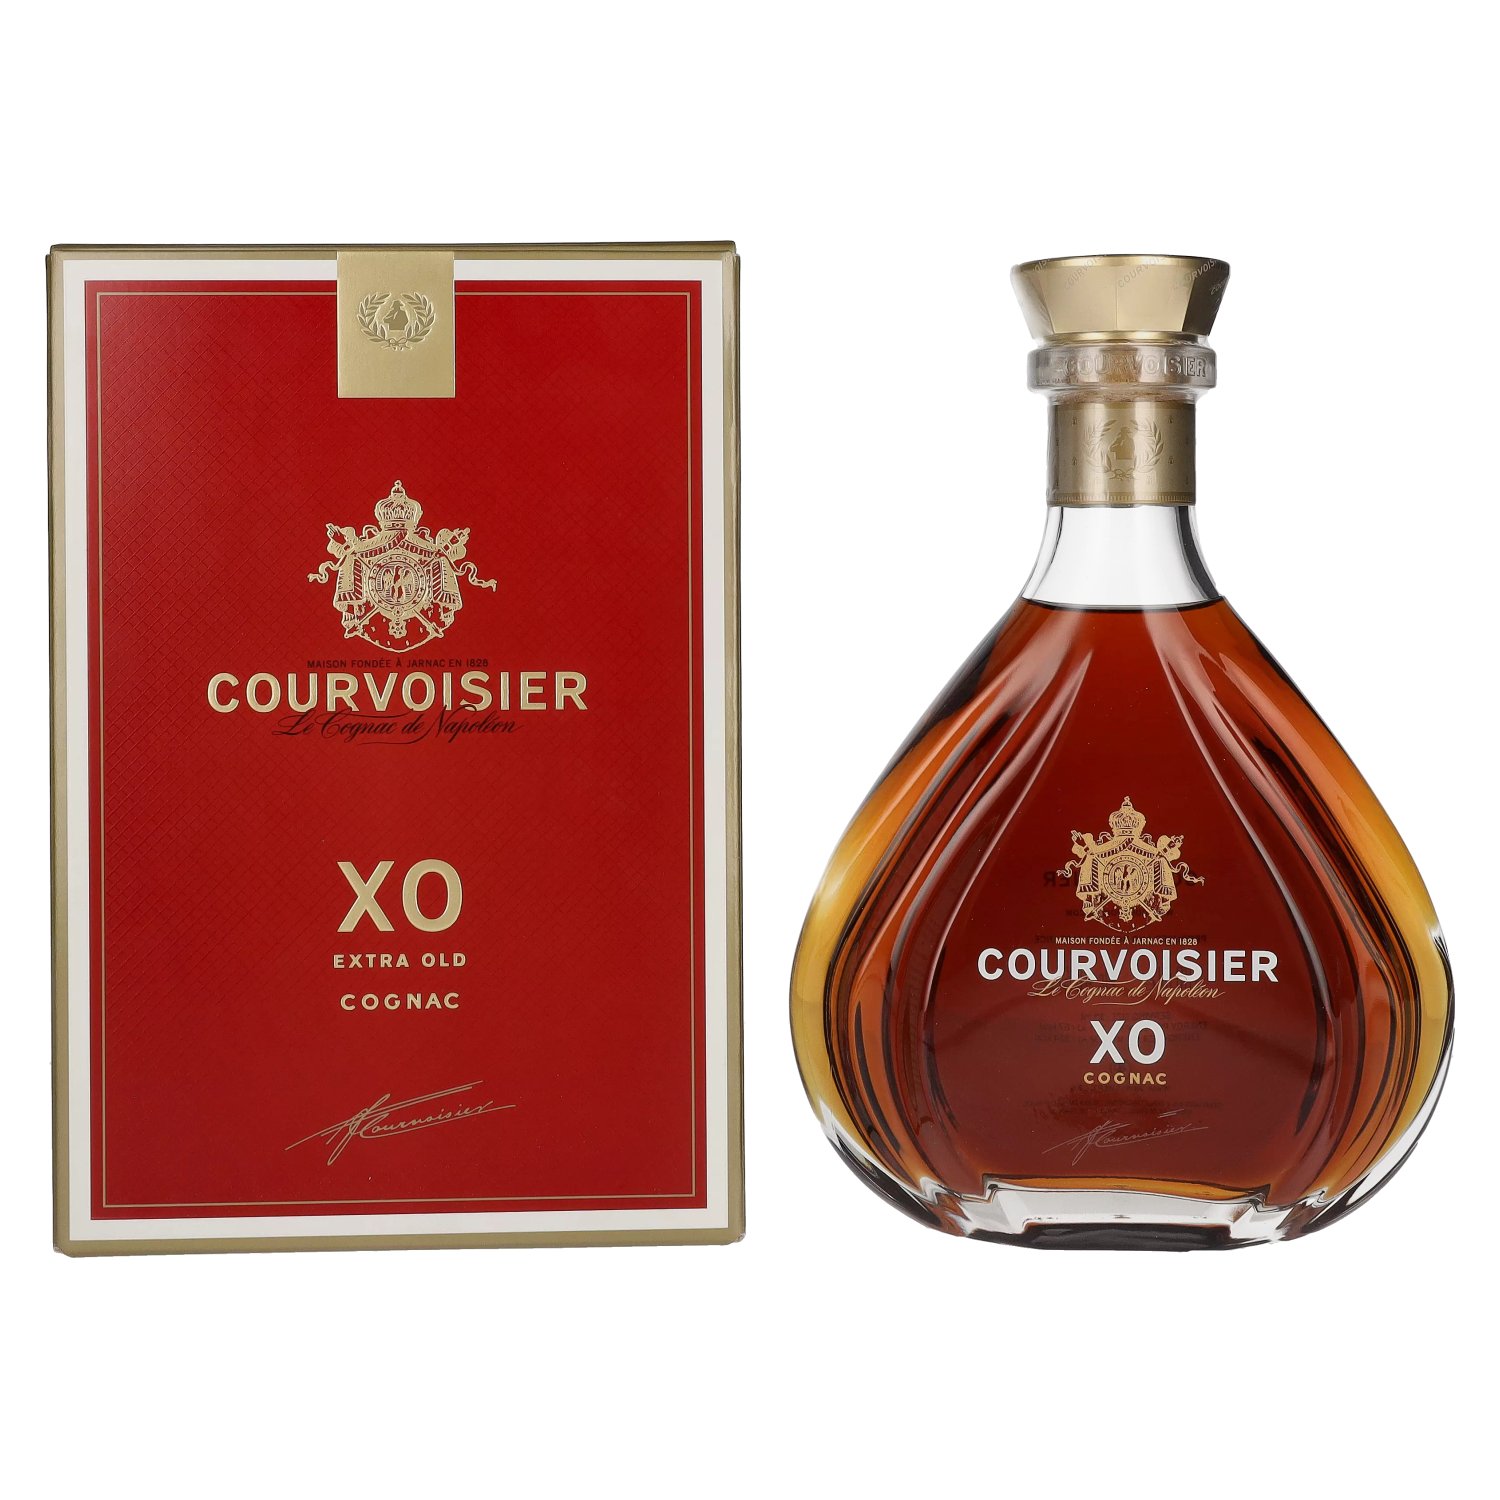 Le rhum Zacapa XO : le Cognac des rhums